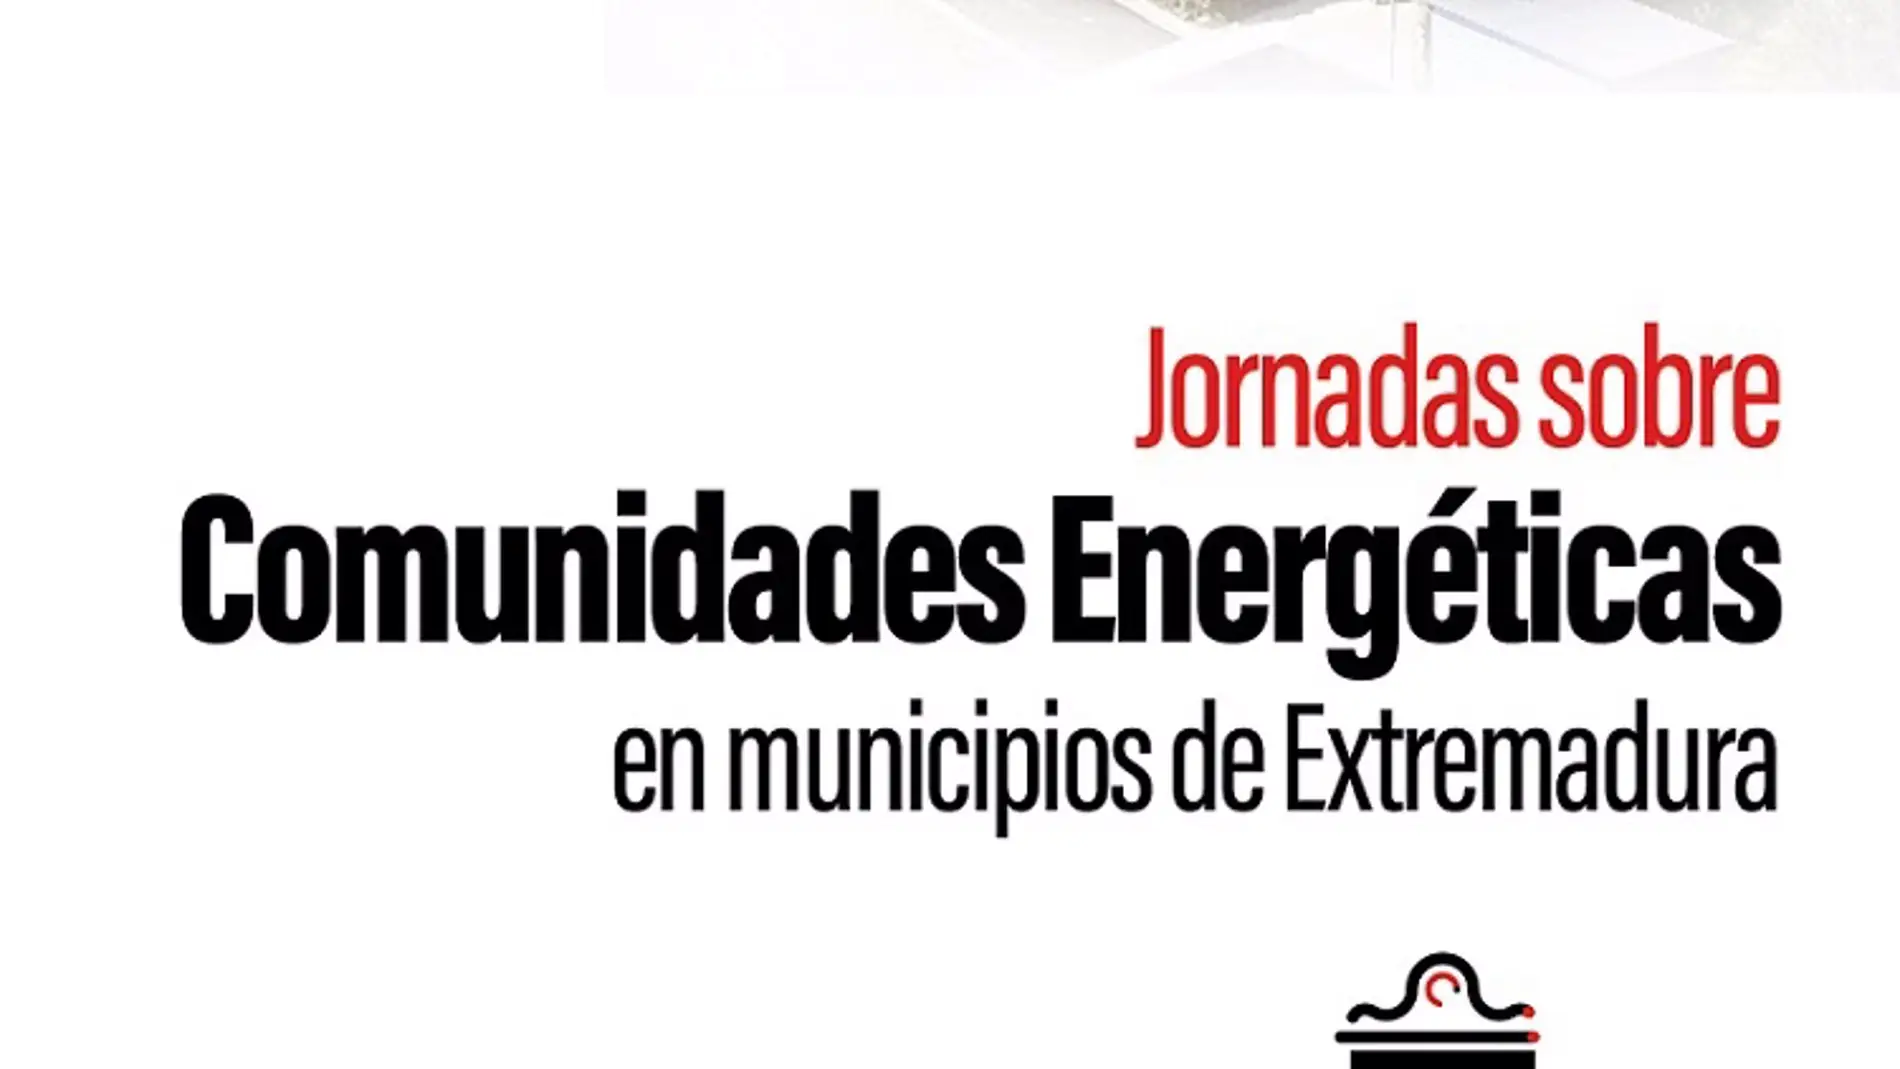 La Diputación de Badajoz celebra "Comunidades Energéticas en Municipios de Extremadura" el 6 de julio